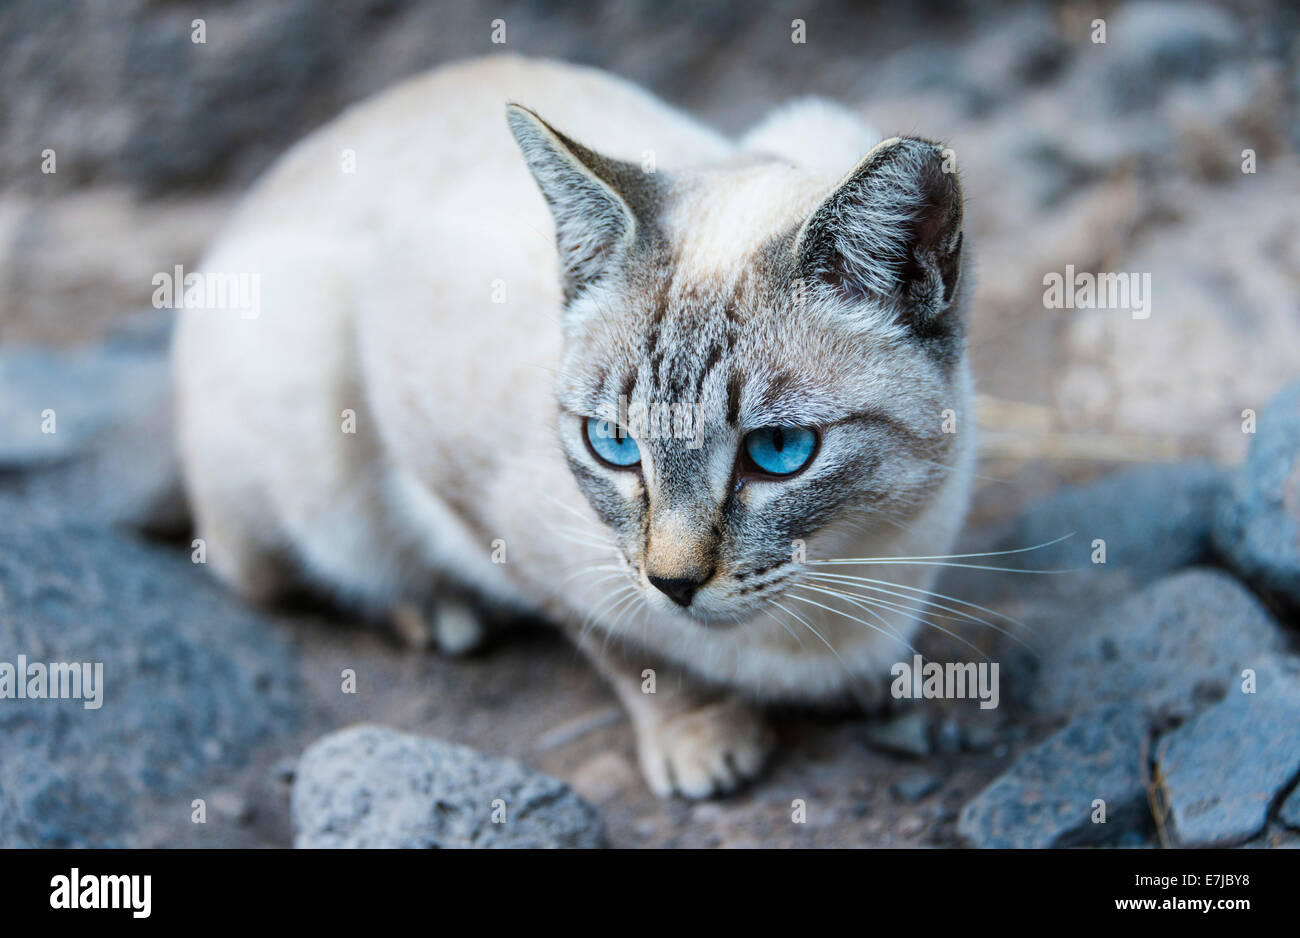 Katze mit blauen Augen und hellem Fell, Teneriffa, Kanarische Inseln,  Spanien Stockfotografie - Alamy